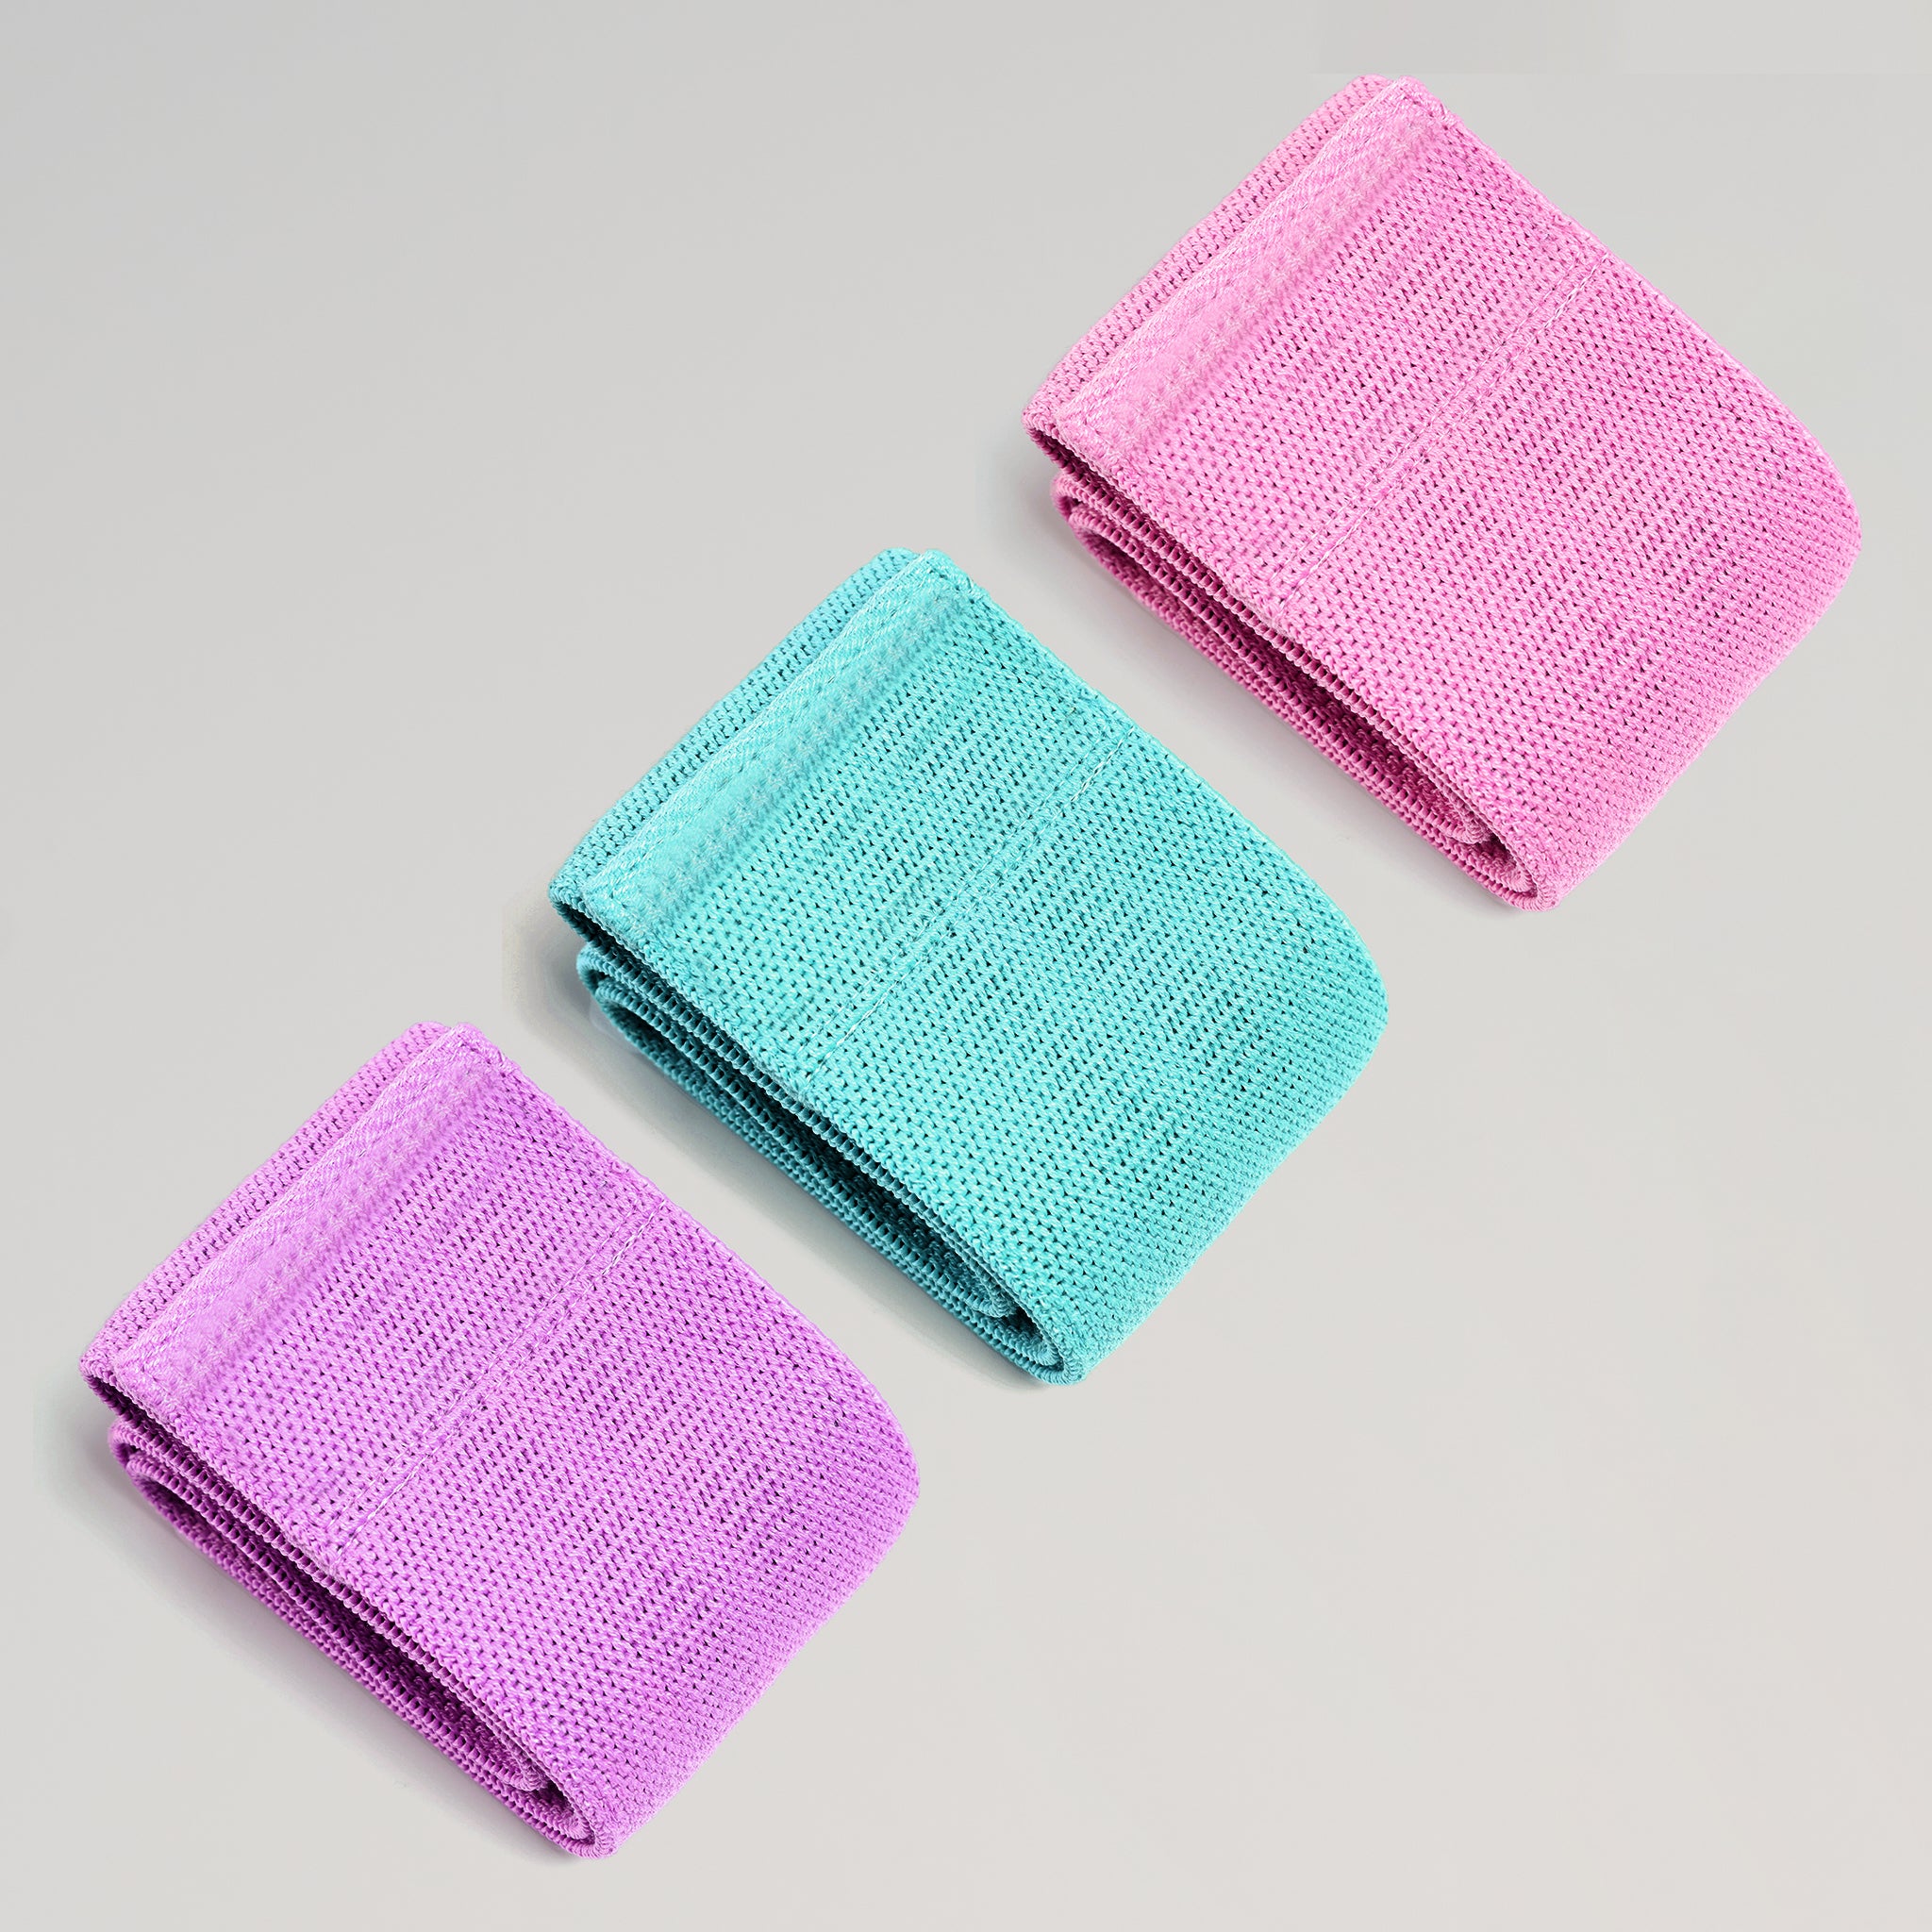 Hüft-Widerstandsband aus Poly-Baumwolle in reiner Farbe